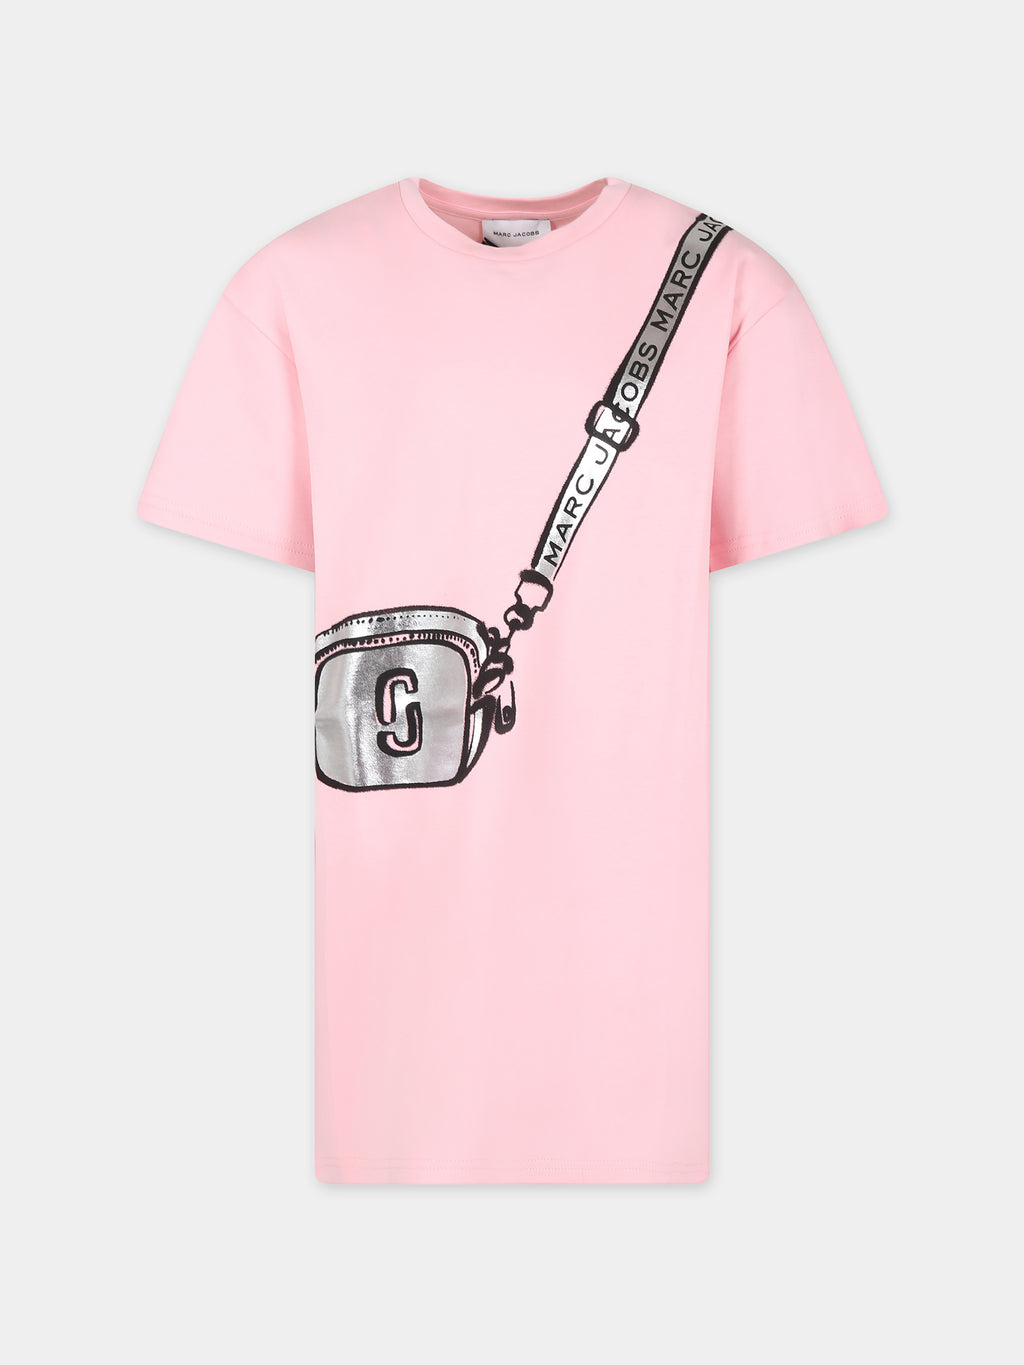 Vestito rosa per bambina con stampa borsa e logo